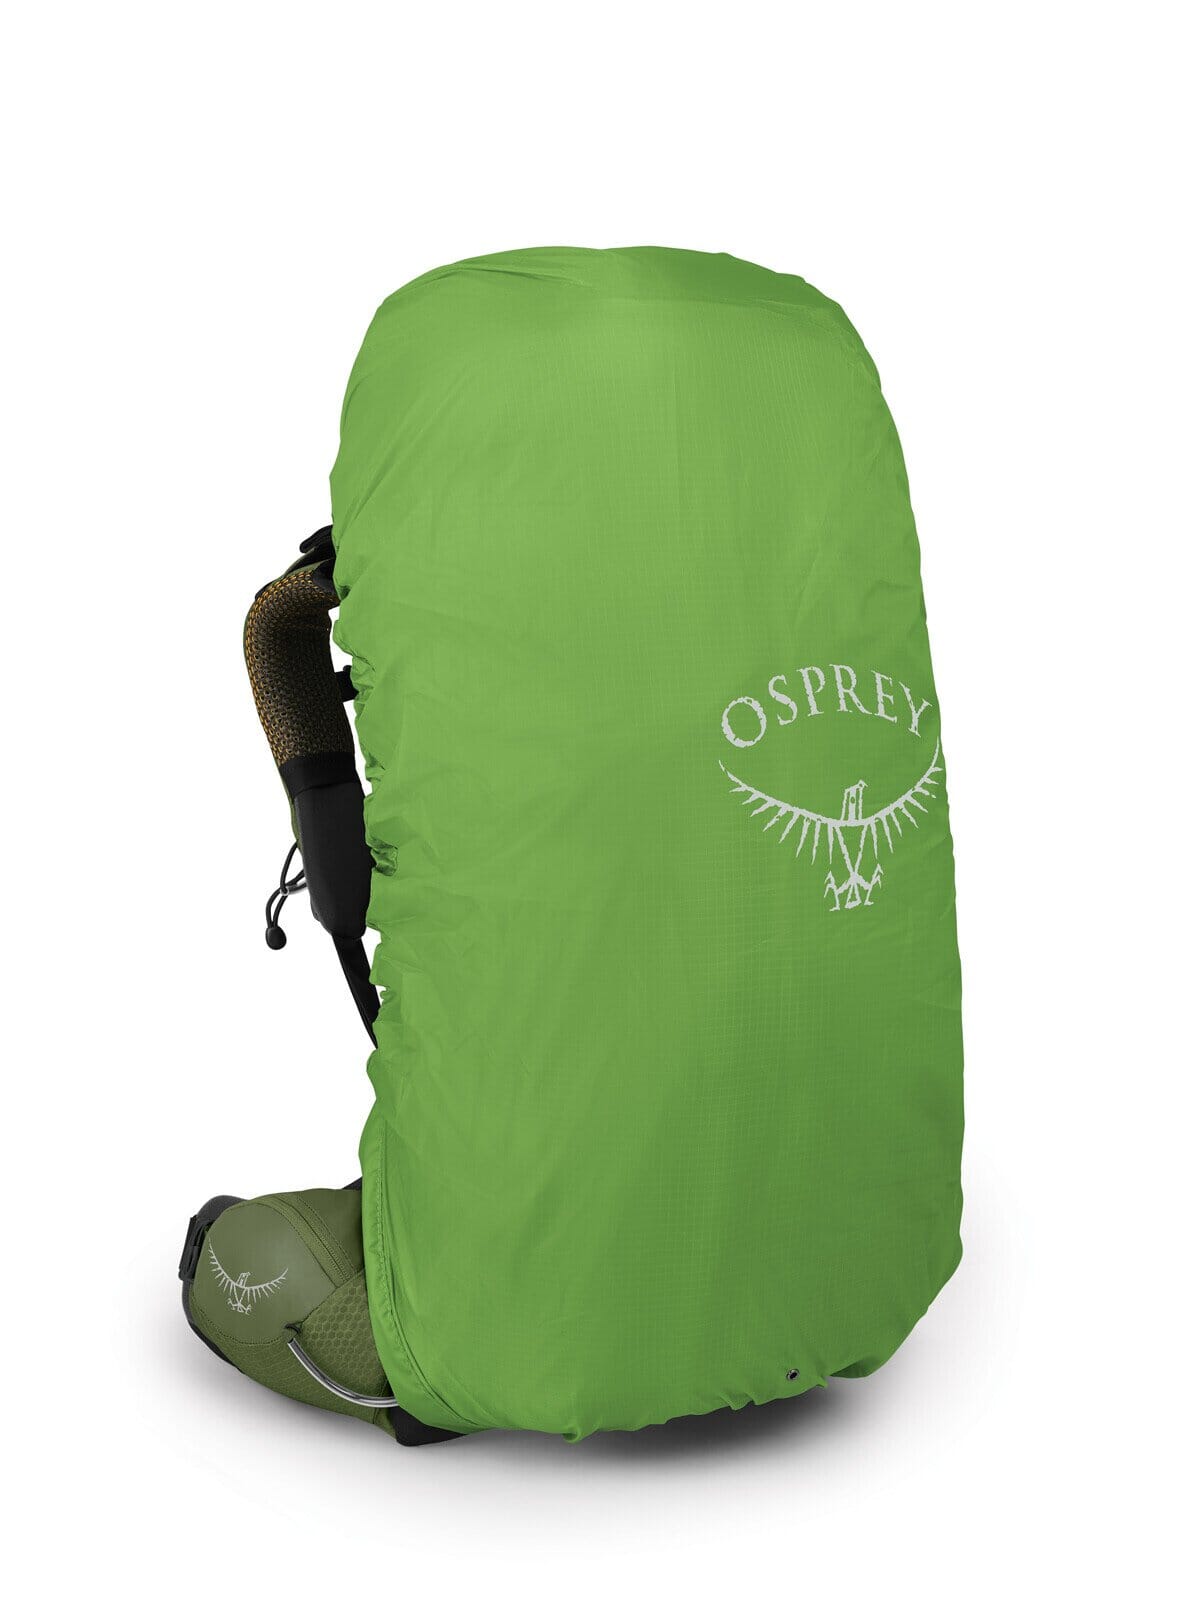 Osprey Atmos AG 50 Litre Backpack Men's 